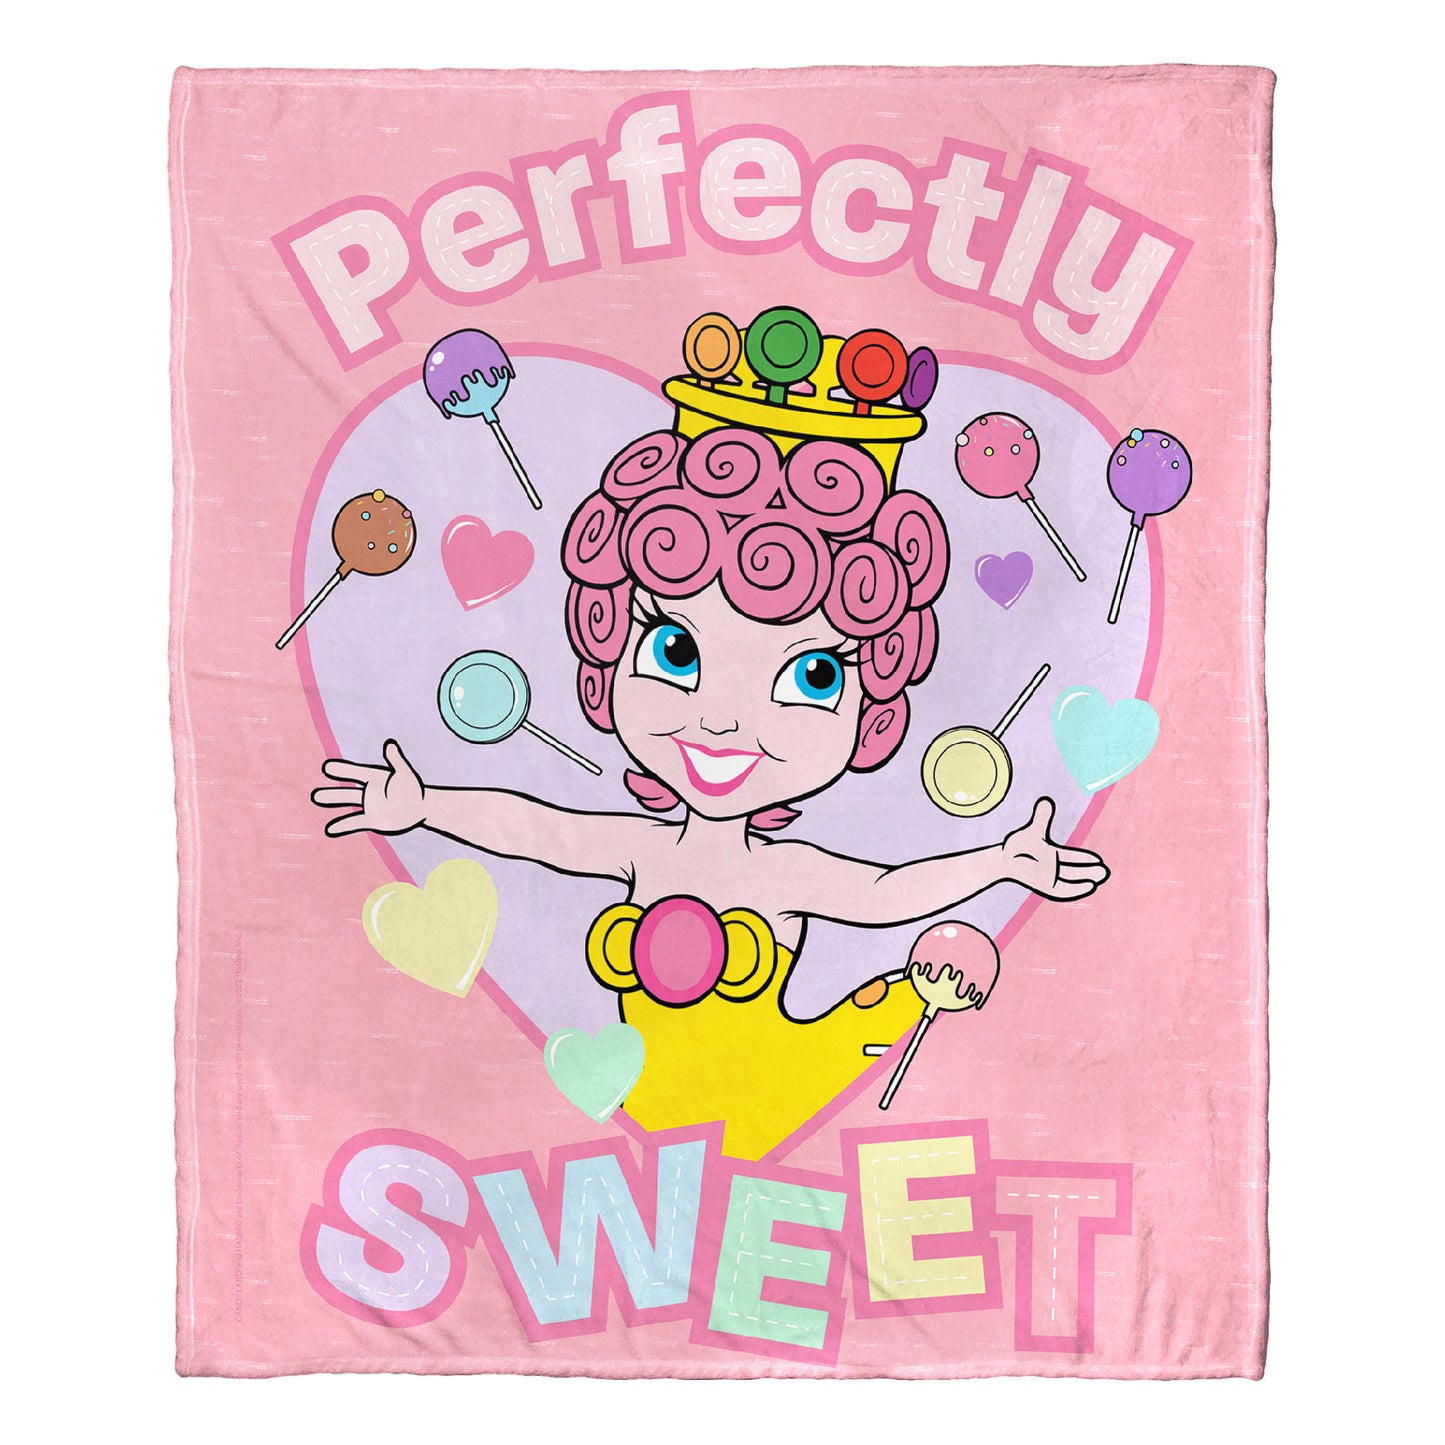 Hasbro Candyland Perfectly Sweet Throw Blanket 50"x60"